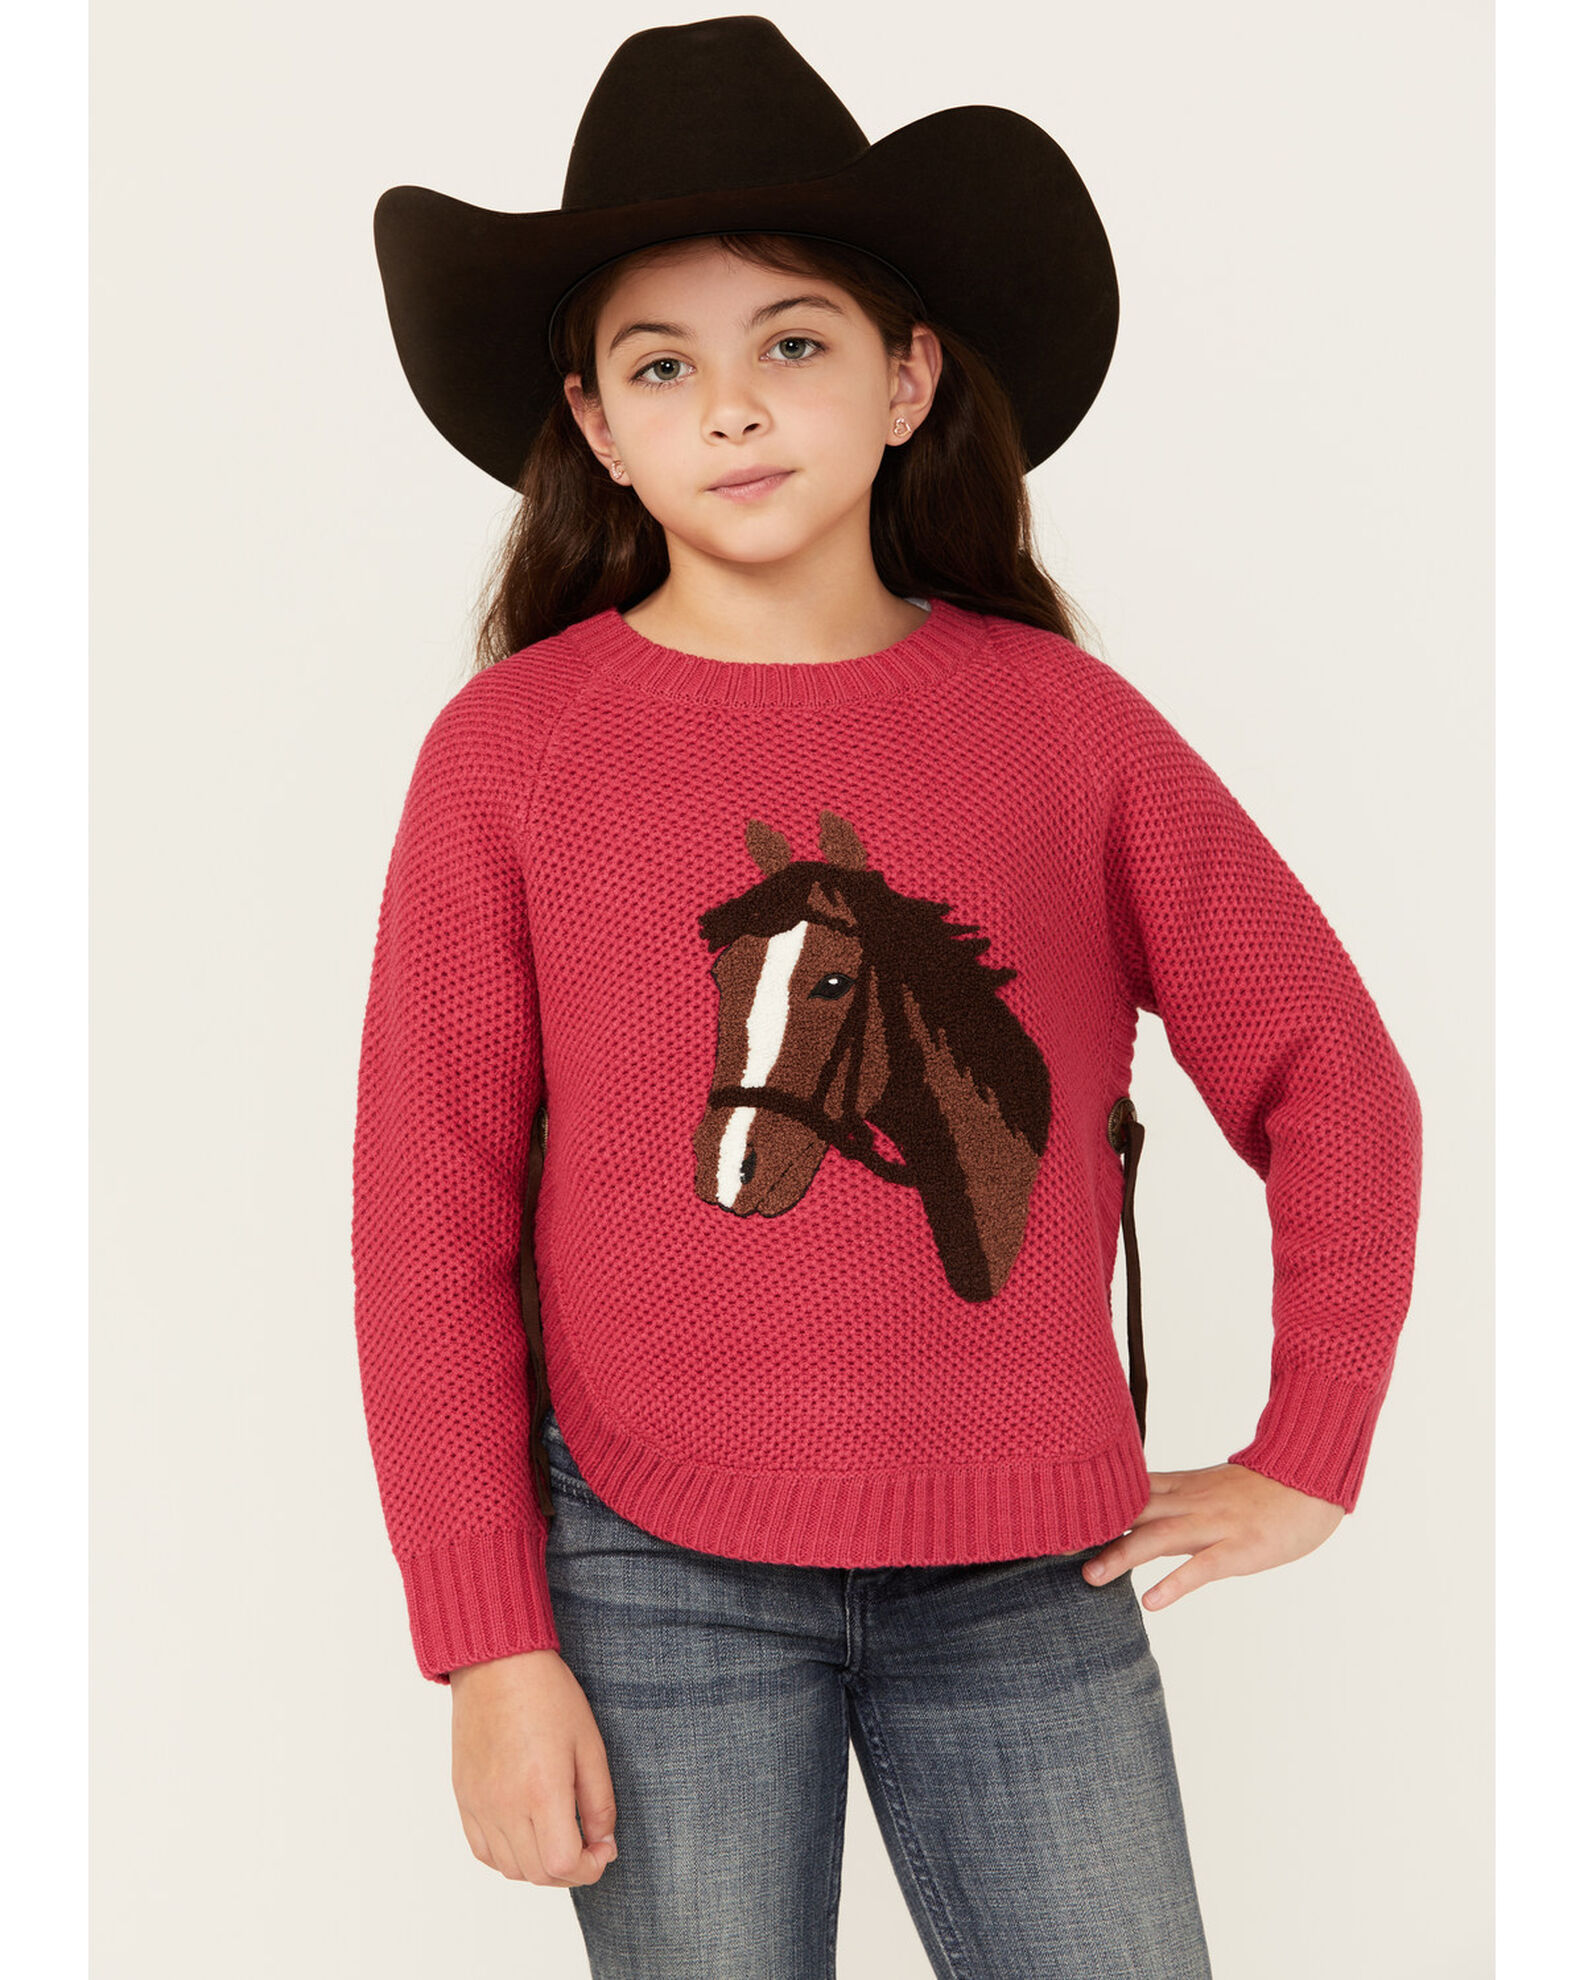 Cotton & Rye Girls' Horse Applique Round Bottom Sweater